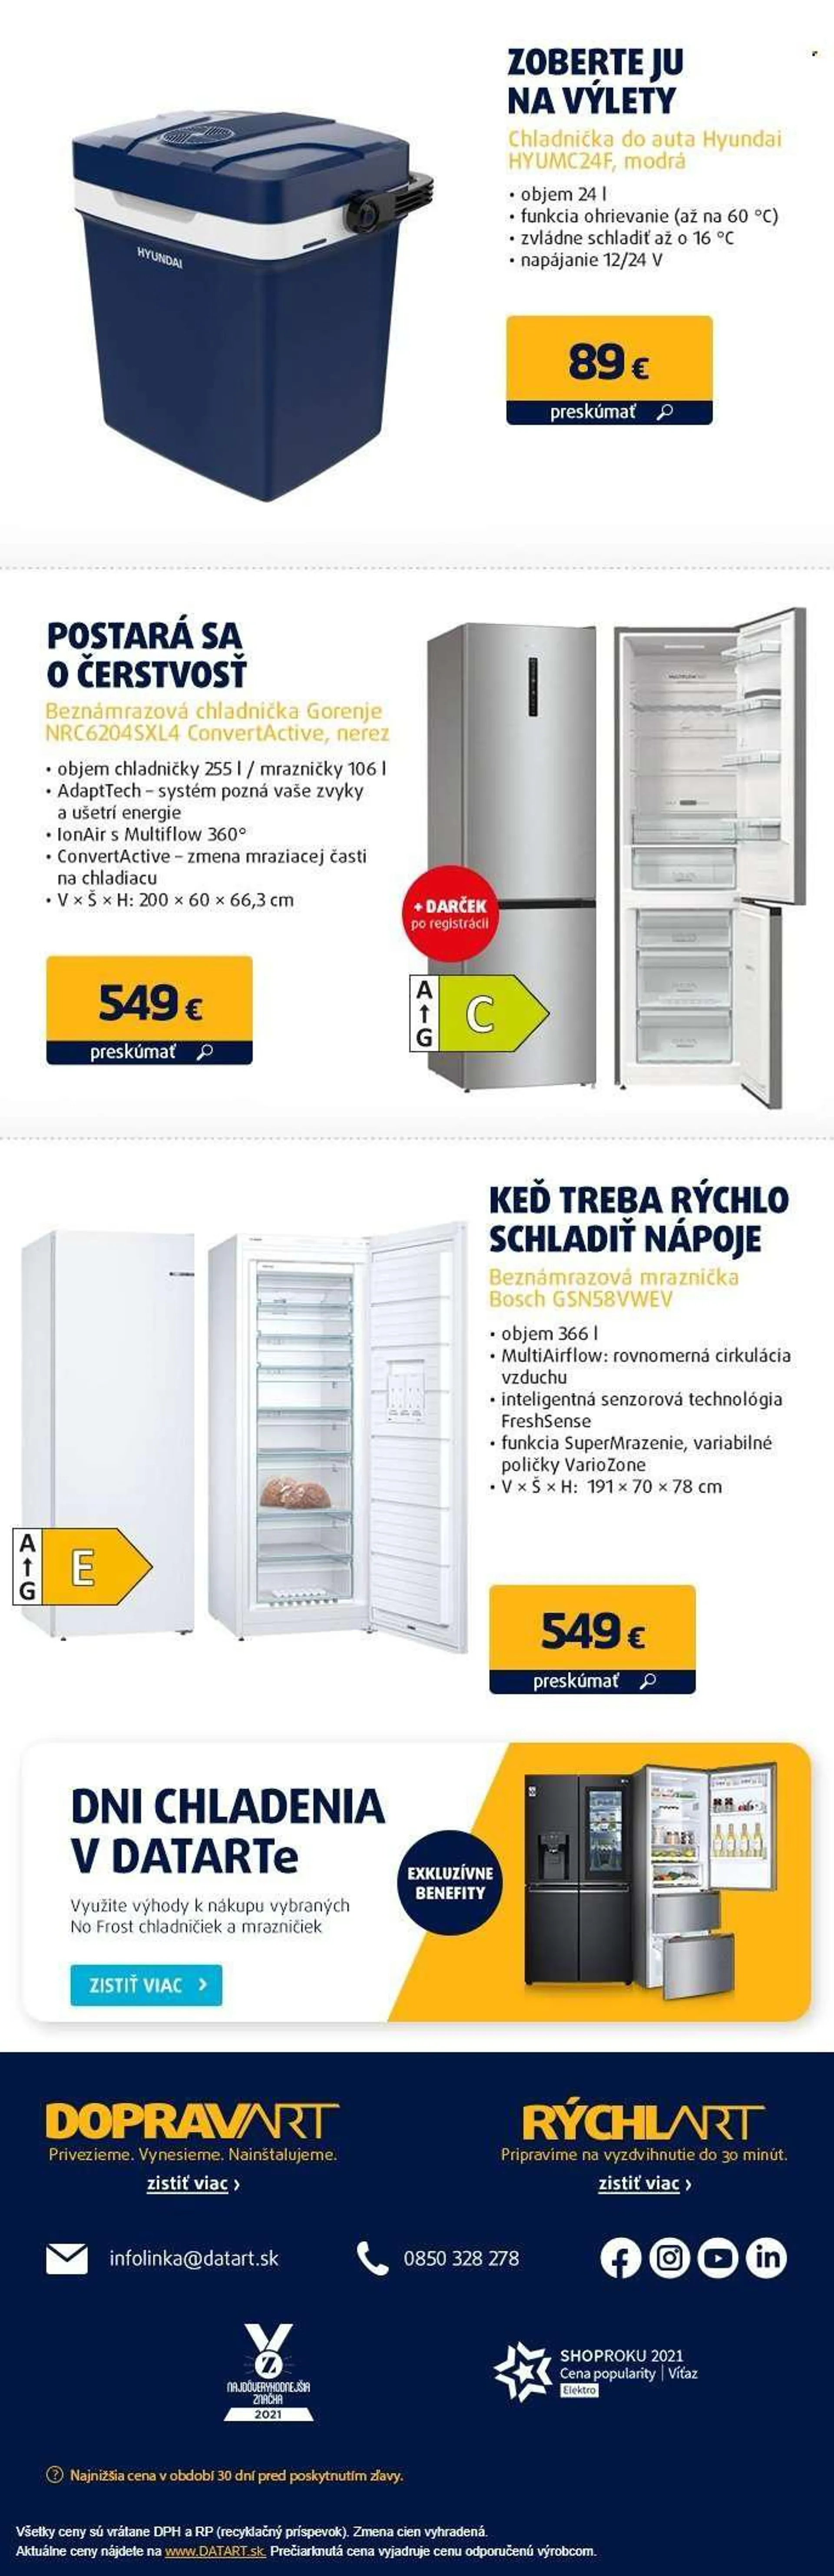 Leták Datart - Produkty v akcii - Hyundai, Bosch, Gorenje, chladnička, beznámrazová chladnička. Strana 3.